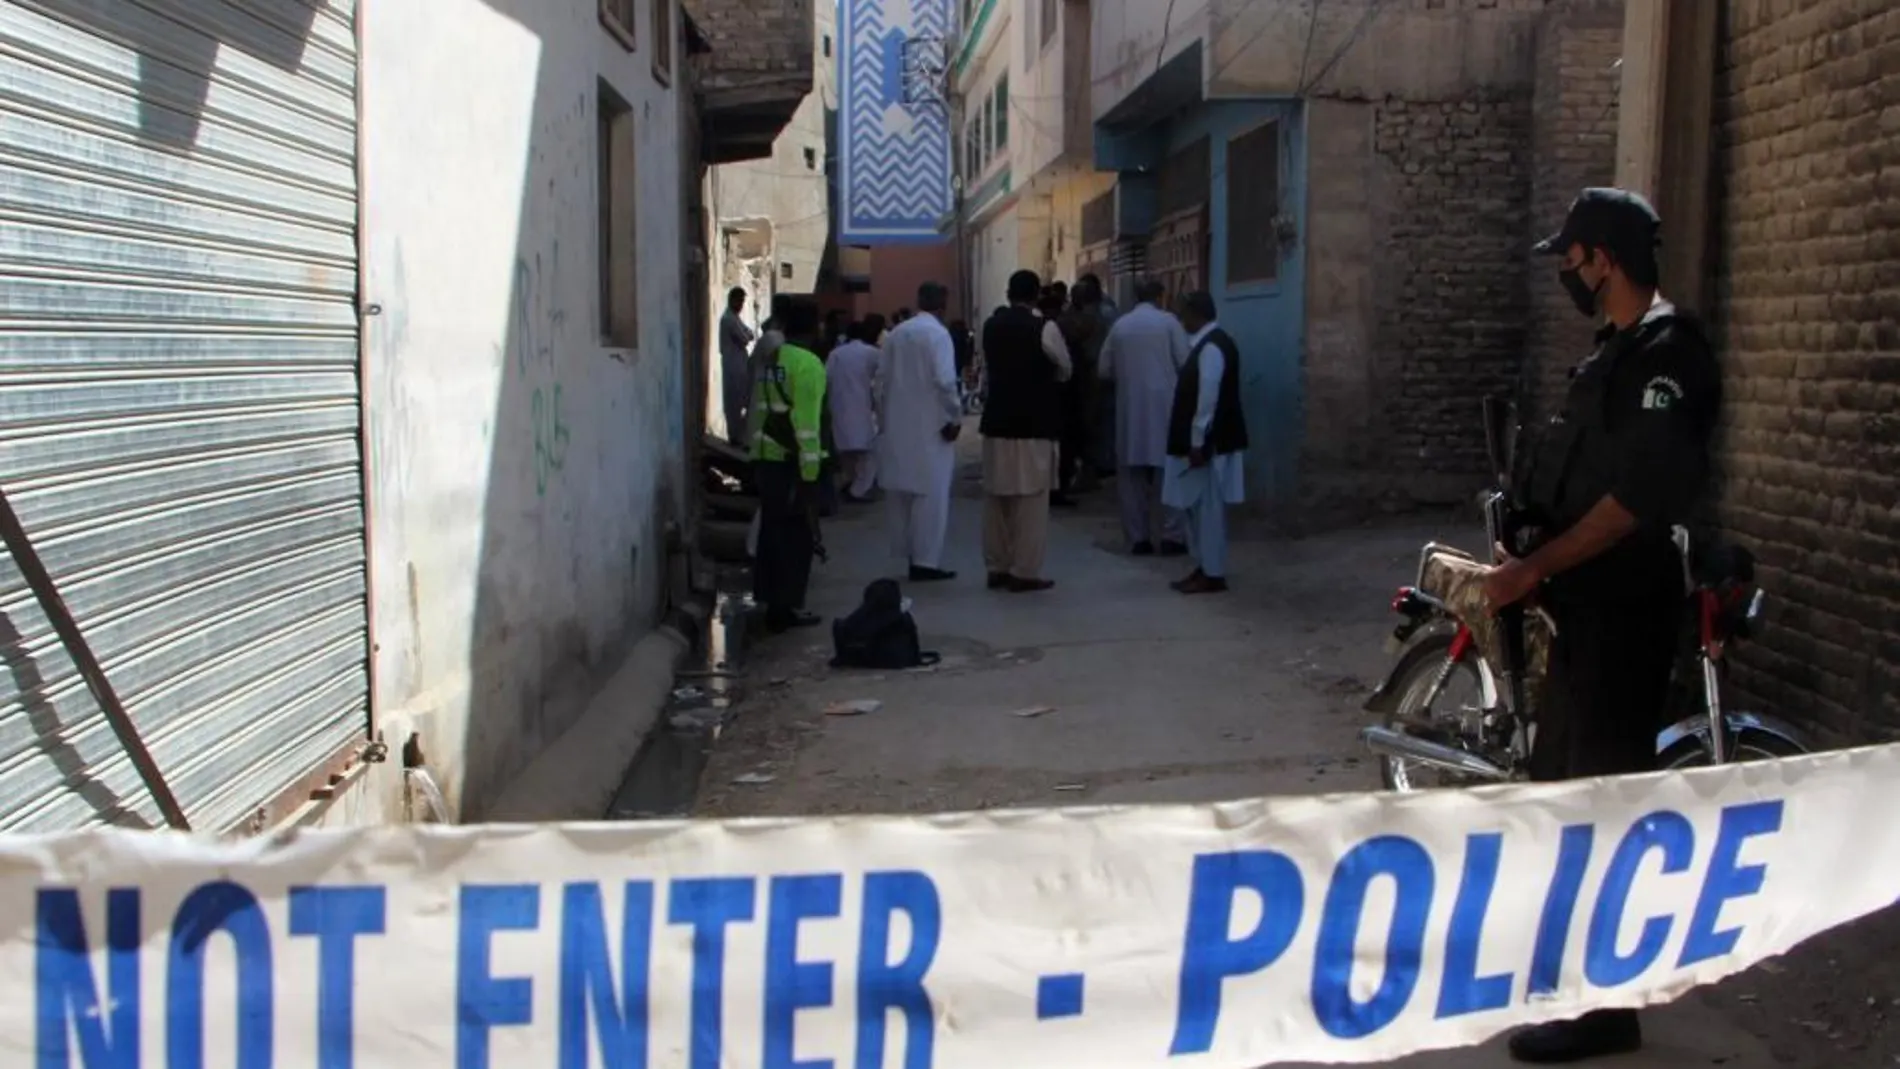 El pasado día 13 se registró otro atentado contra Policías en Quetta.